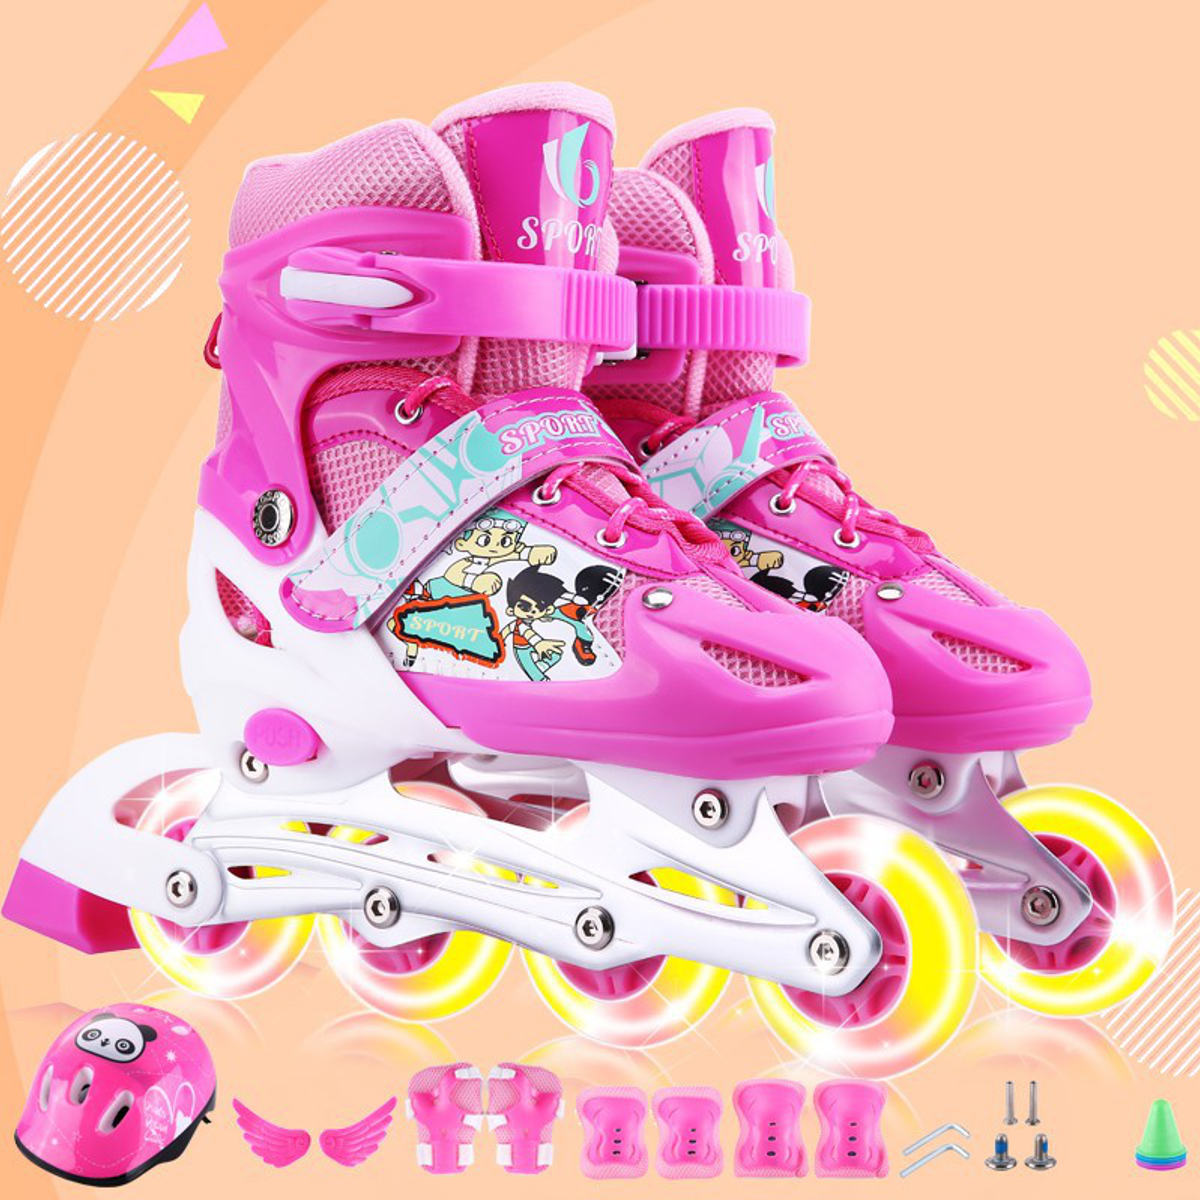 3-Sizes-Adjustable-Inline-Skates-Set-with-LED-Flashing-Wheels-Safe-Roller-Light-Up-Illuminating-Whee-1826045-15